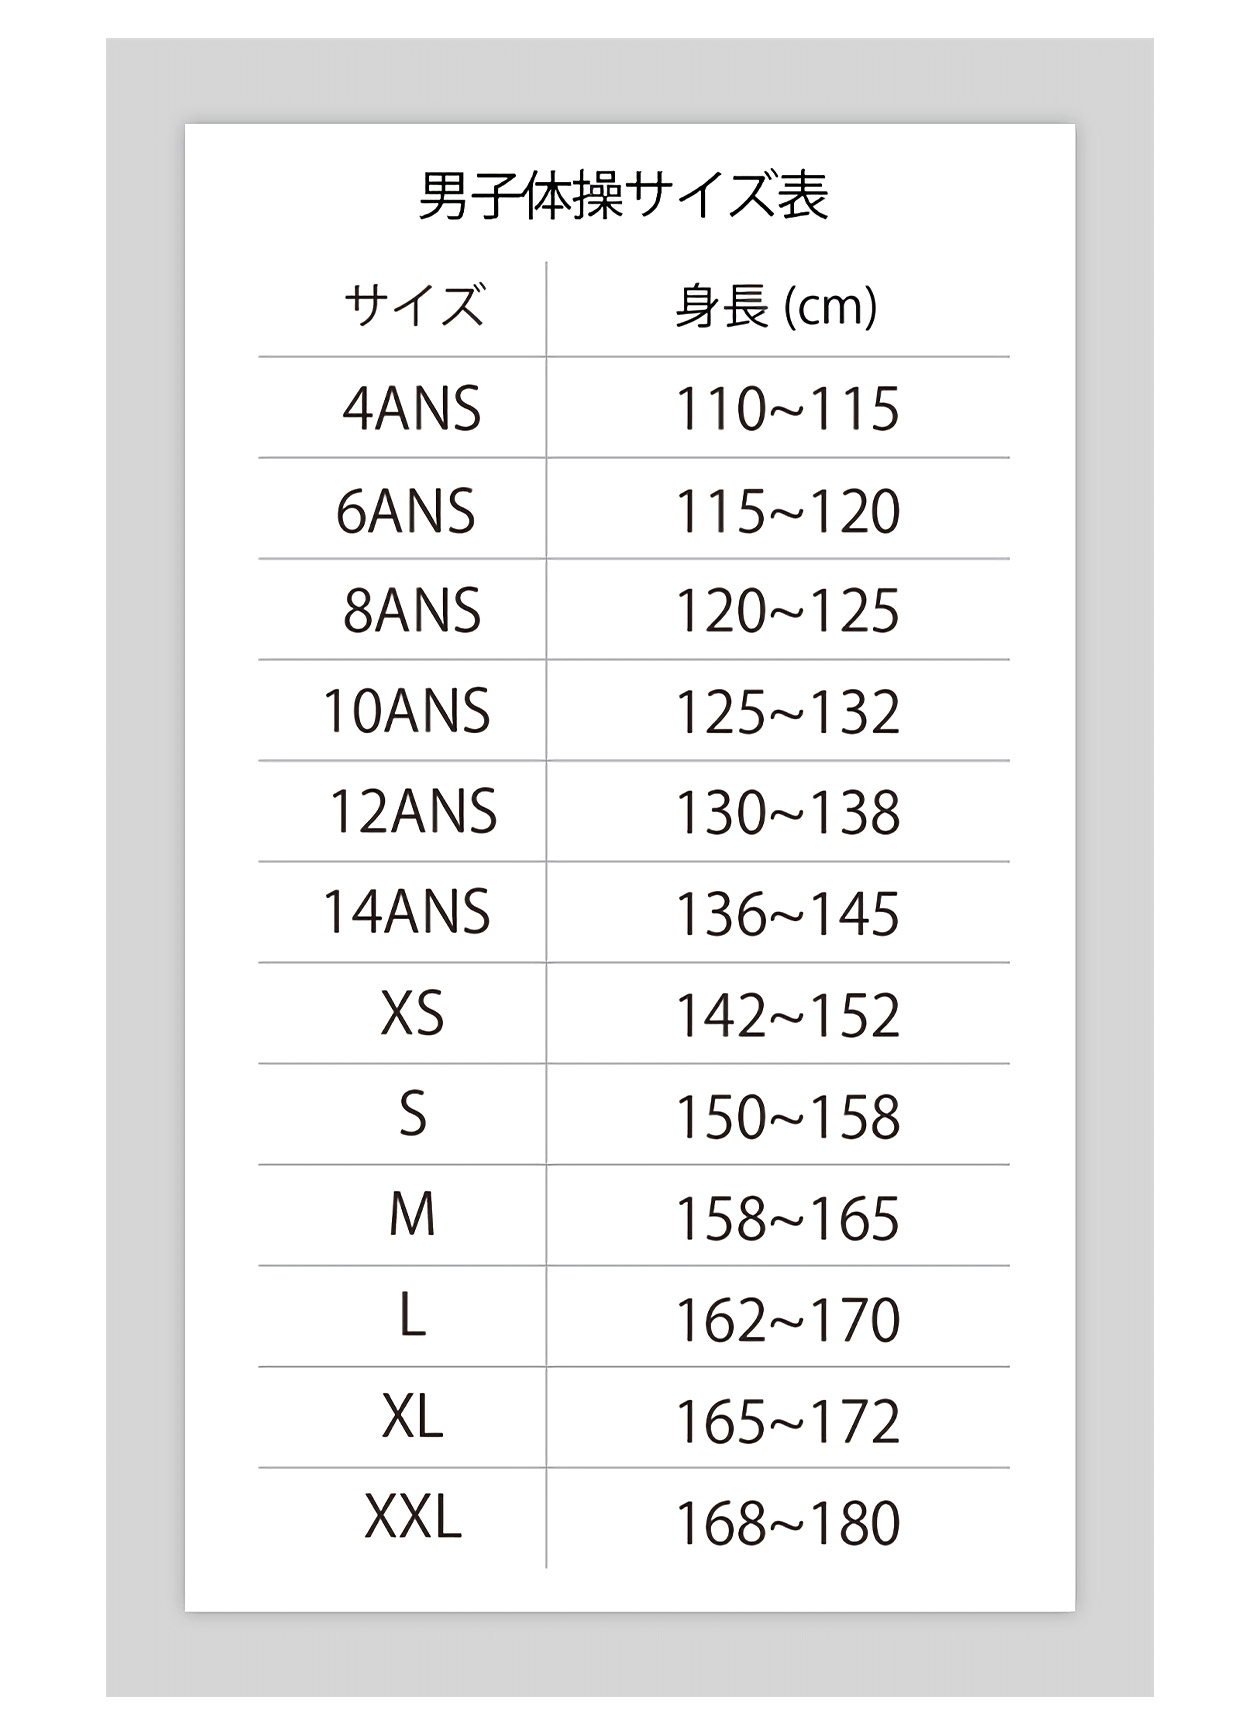 男子体操レオタードサイズ表